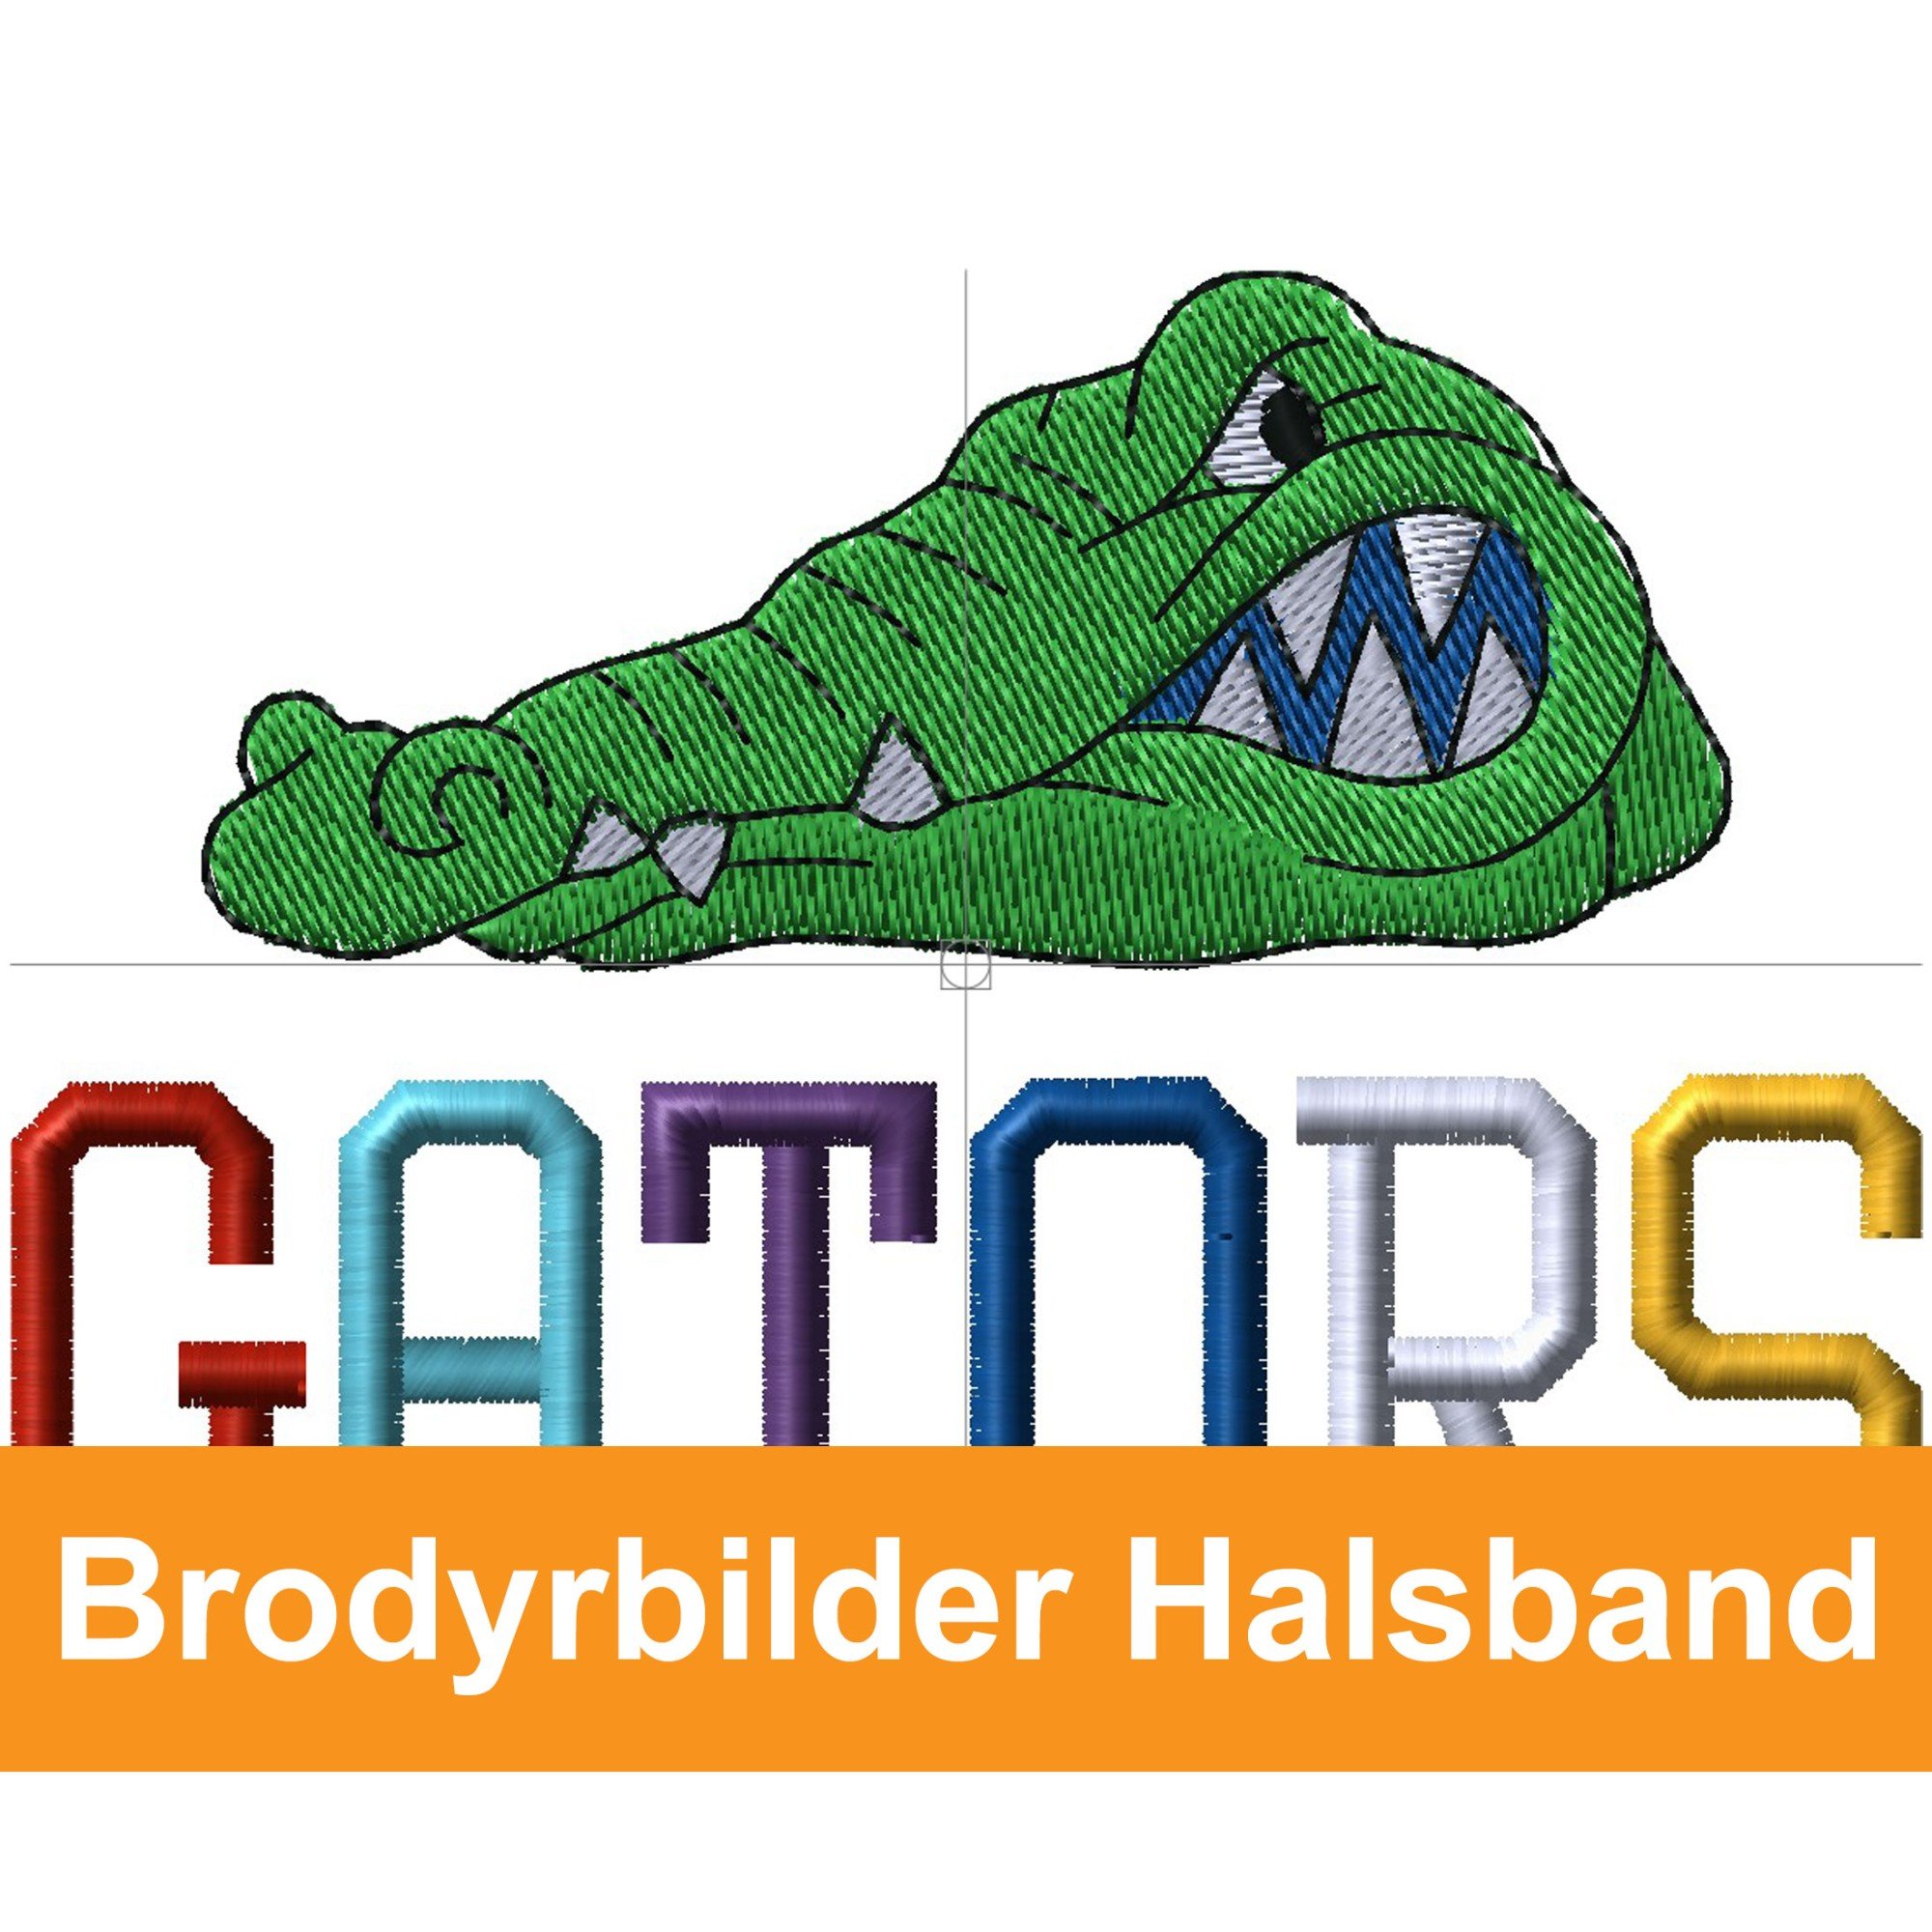 Brodyrbilder halsband - MACH 4 Dogs